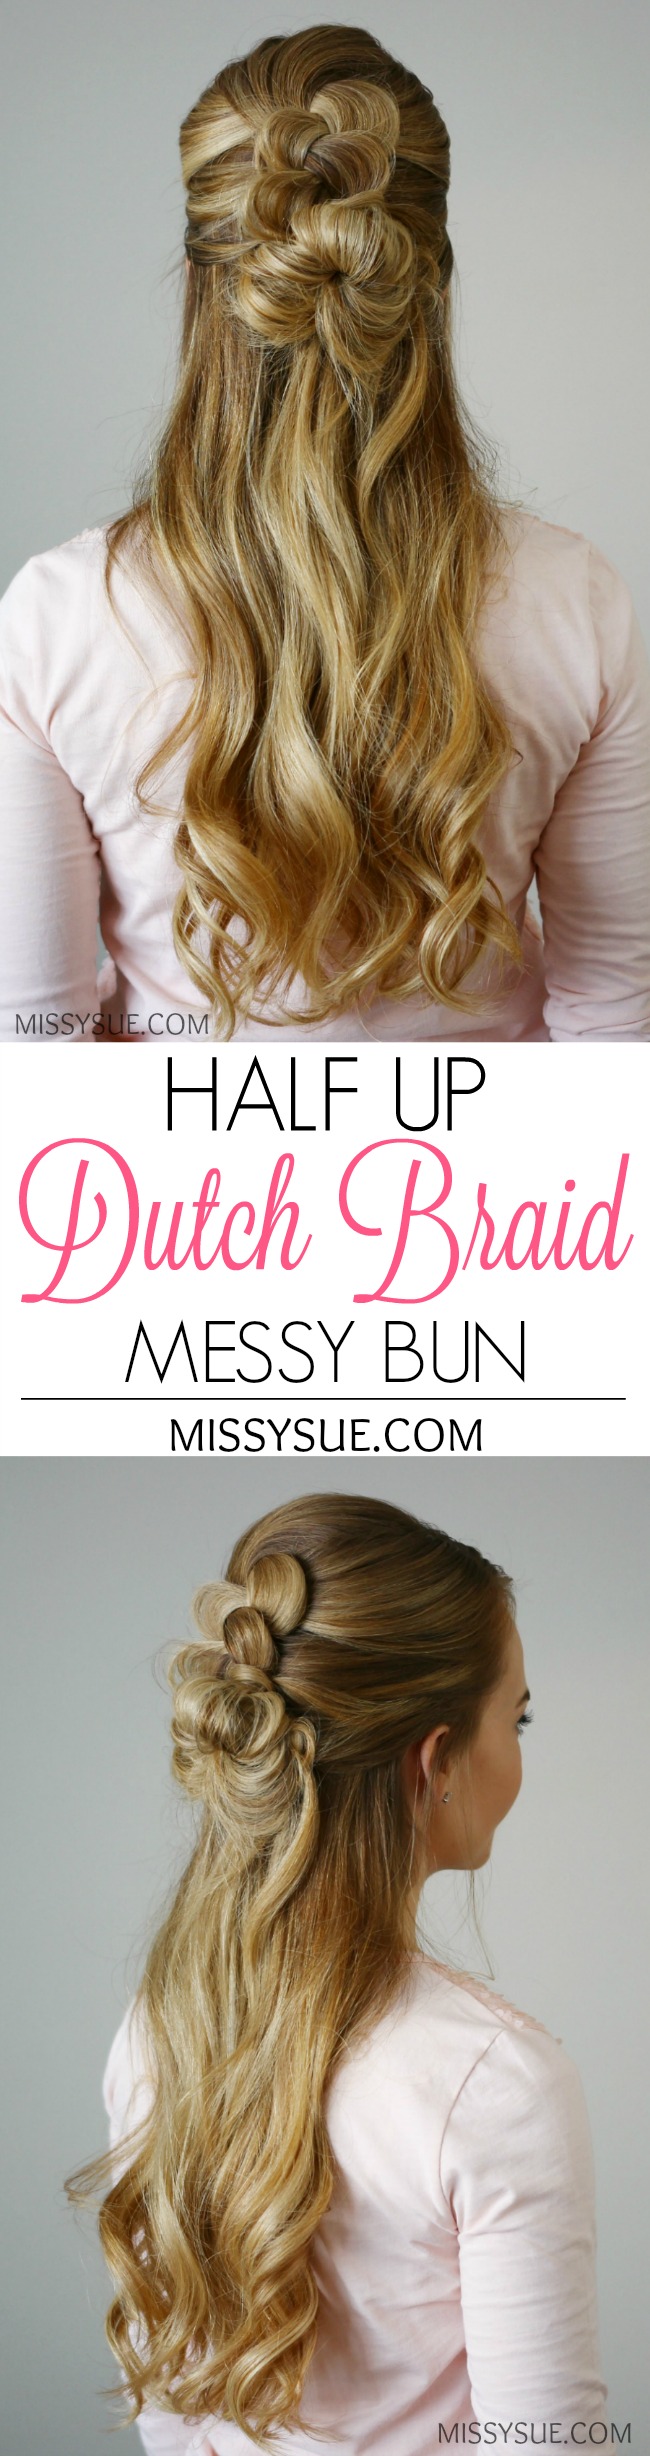 Half Up Dutch Braid Messy Bun